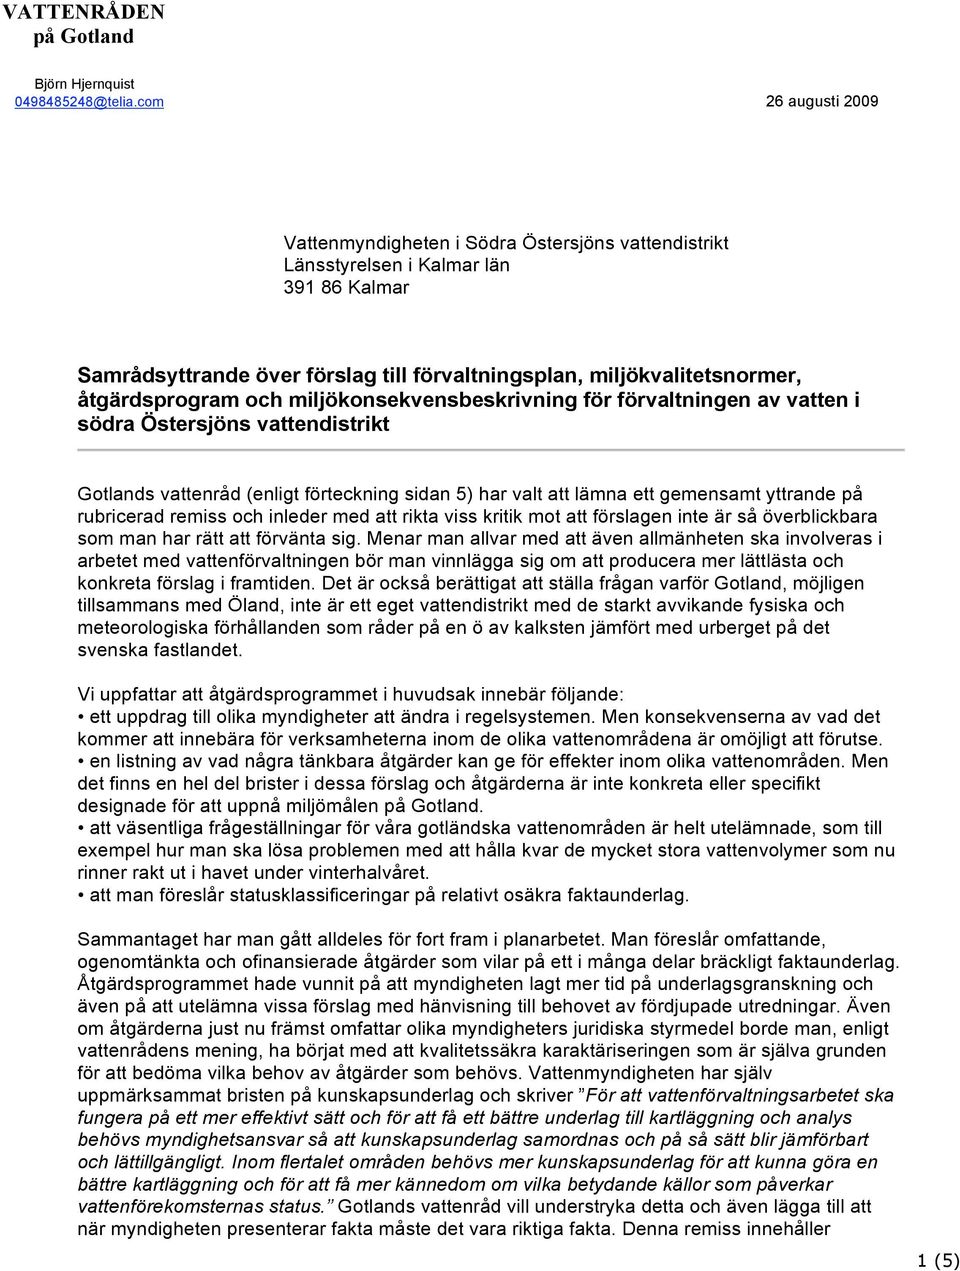 åtgärdsprogram och miljökonsekvensbeskrivning för förvaltningen av vatten i södra Östersjöns vattendistrikt Gotlands vattenråd (enligt förteckning sidan 5) har valt att lämna ett gemensamt yttrande